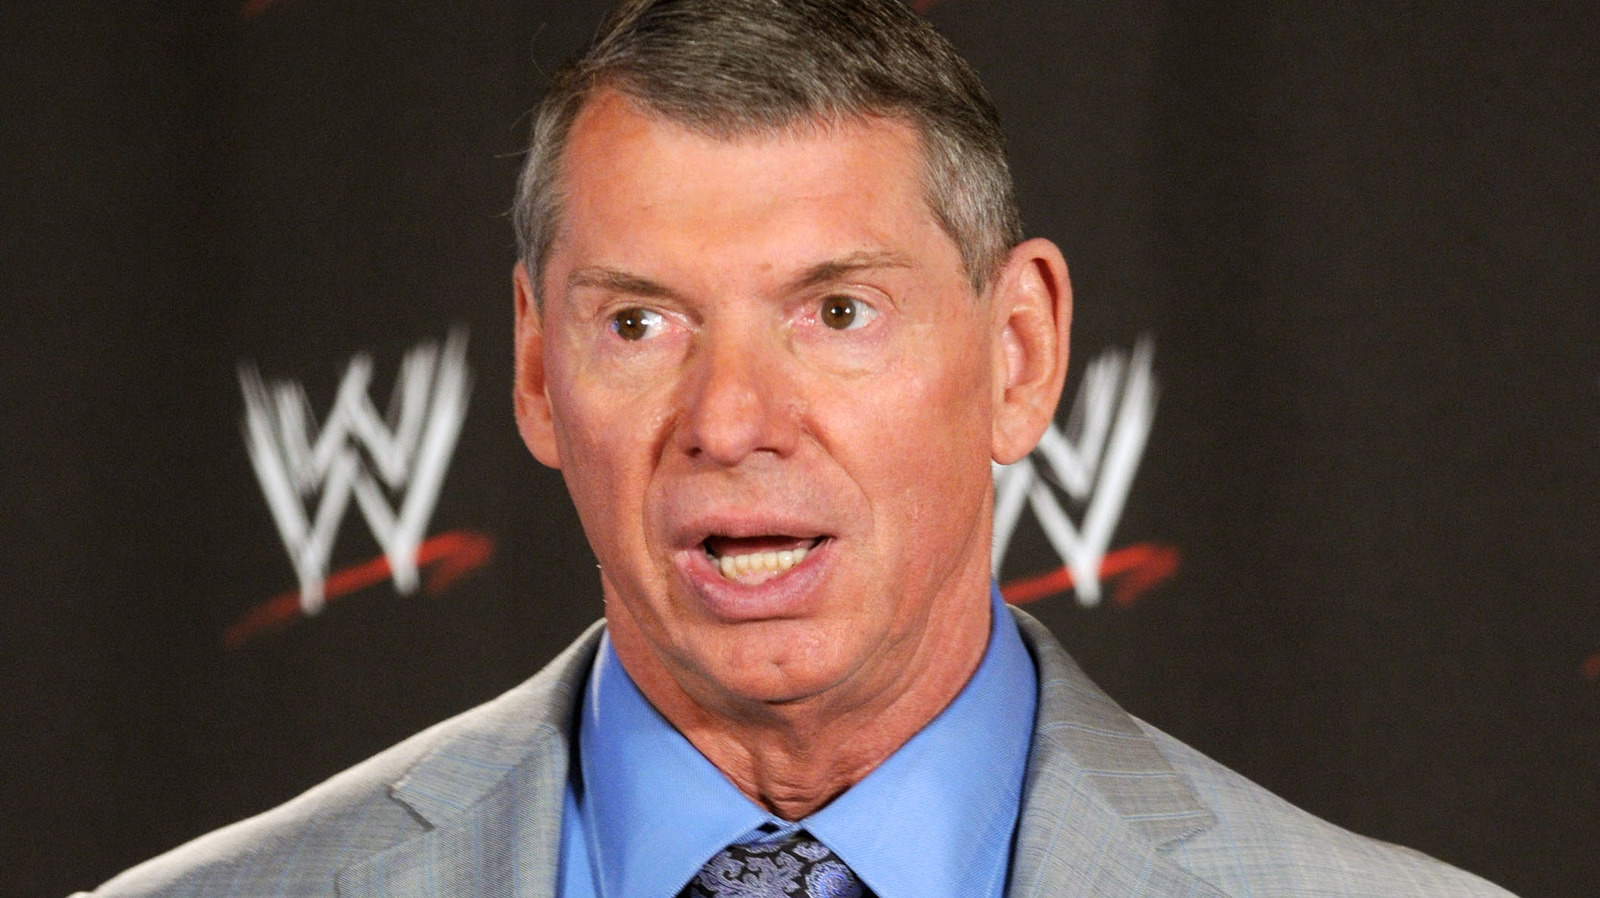 Especulación sobre la posible salida de Vince McMahon de la WWE luego de la fusión de UFC y el lanzamiento de TKO